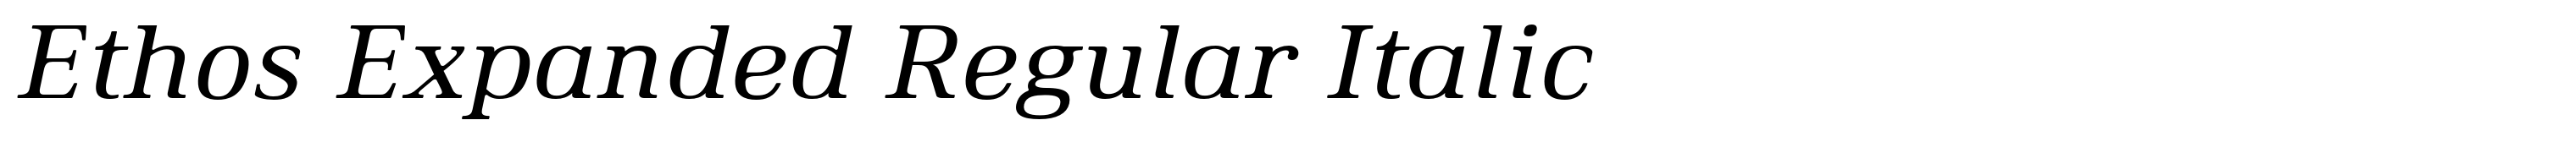 Ethos Expanded Regular Italic